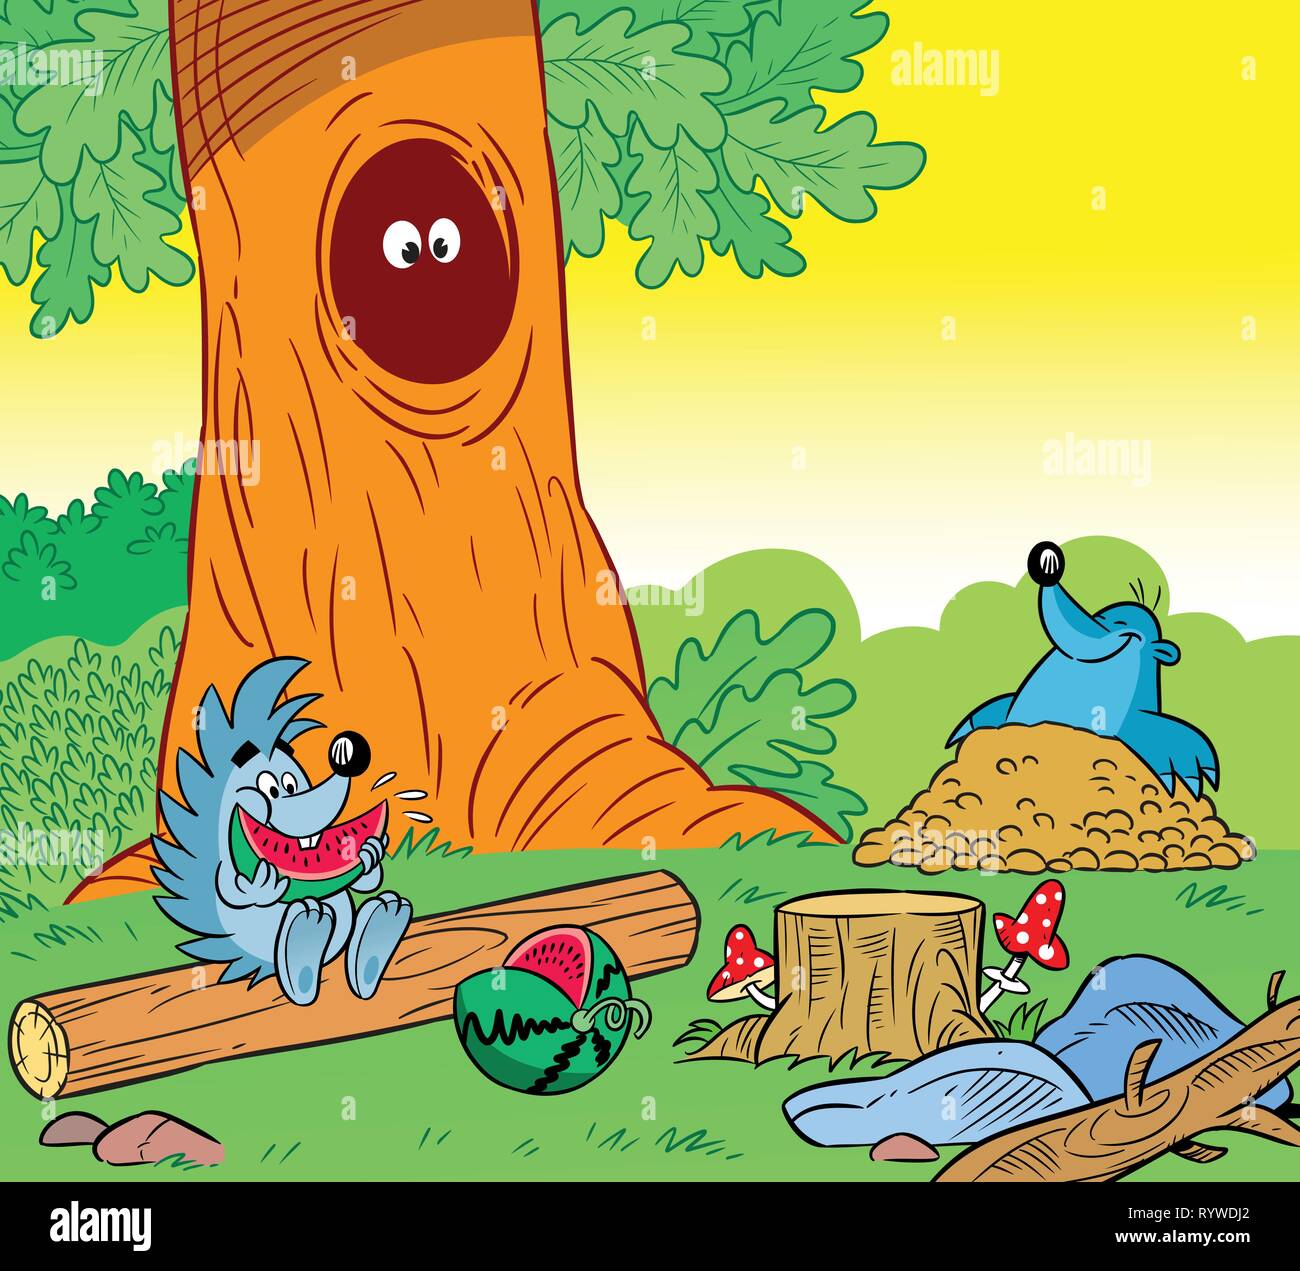 La figura mostra i piccoli animali selvatici nella foresta. Seduta Hedgehog sul legname e mangiando anguria, avuto fuori del foro mole. Illustrazione Illustrazione Vettoriale